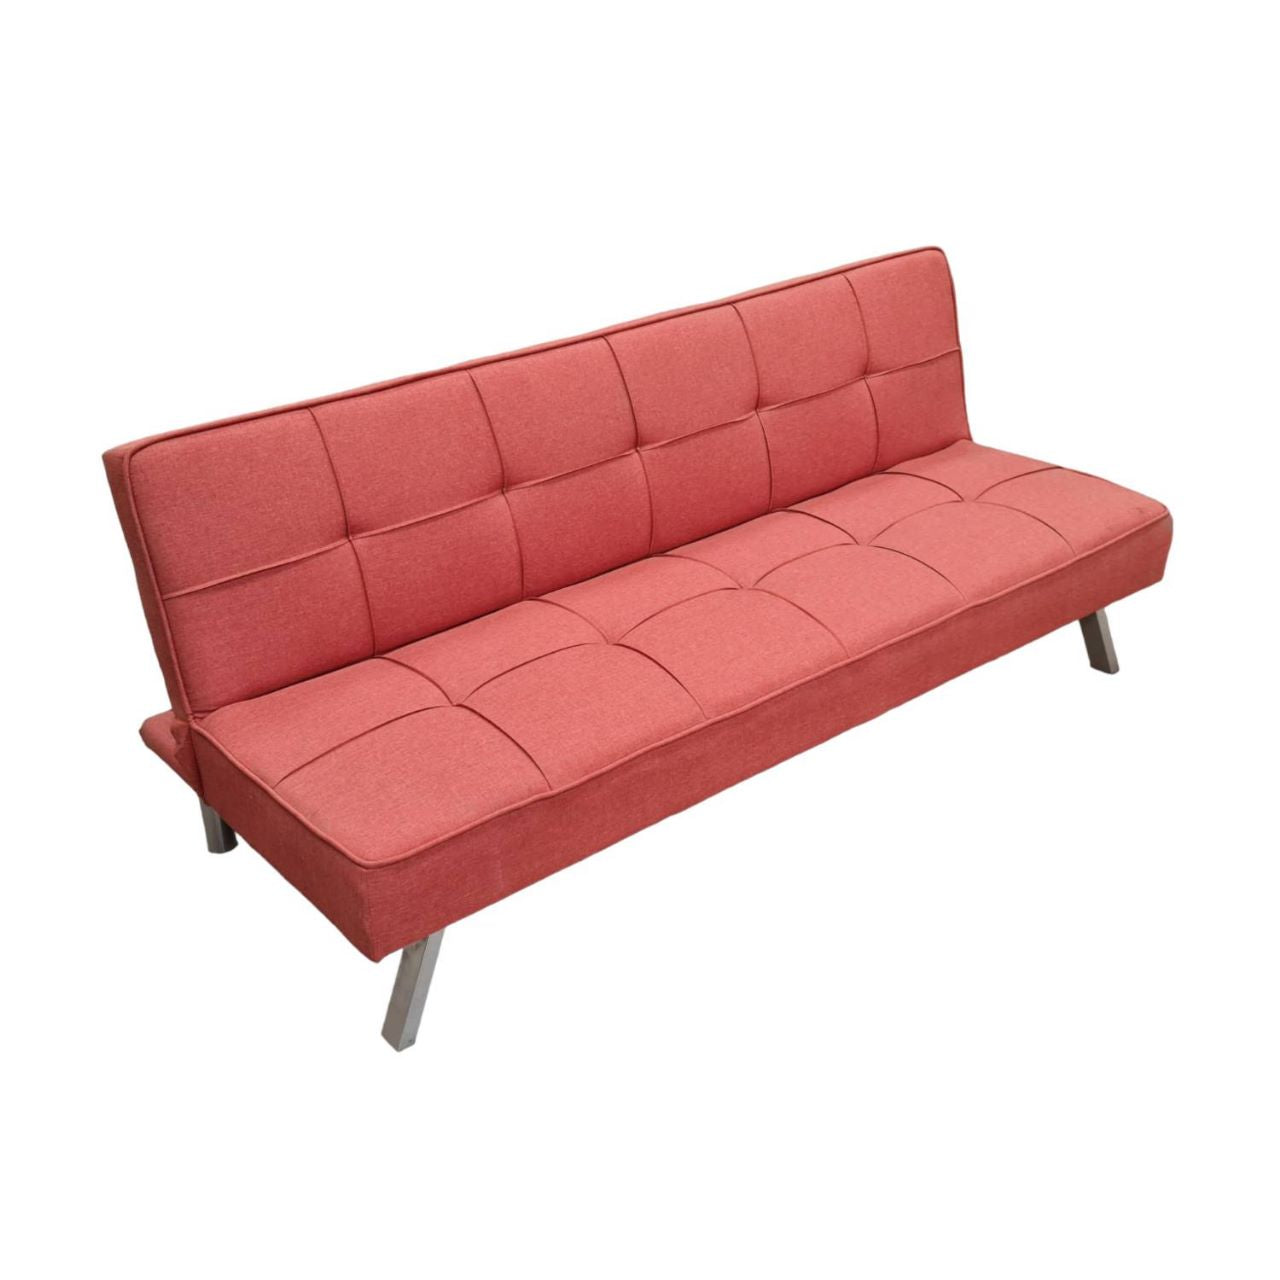 Sofa Cama Plegable Rojo